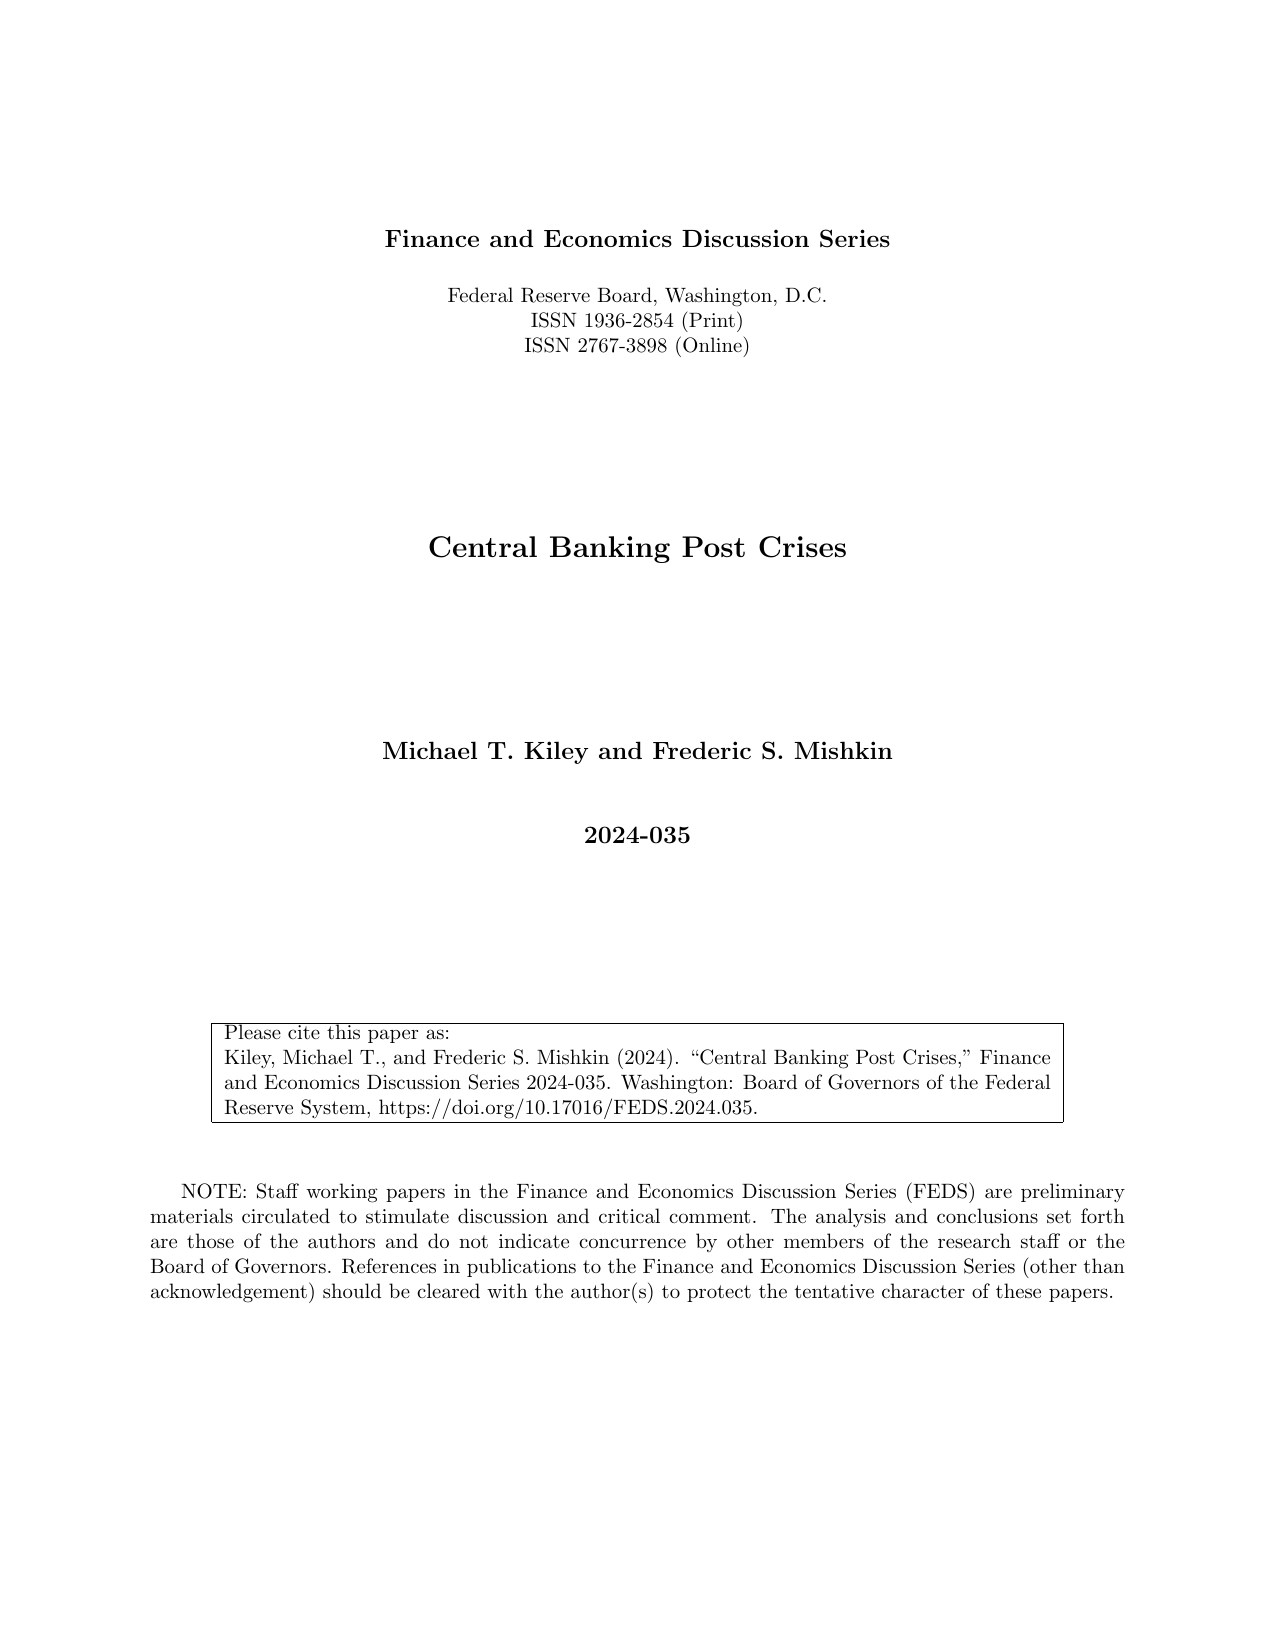 美联储-危机后的中央银行（英）.pdf